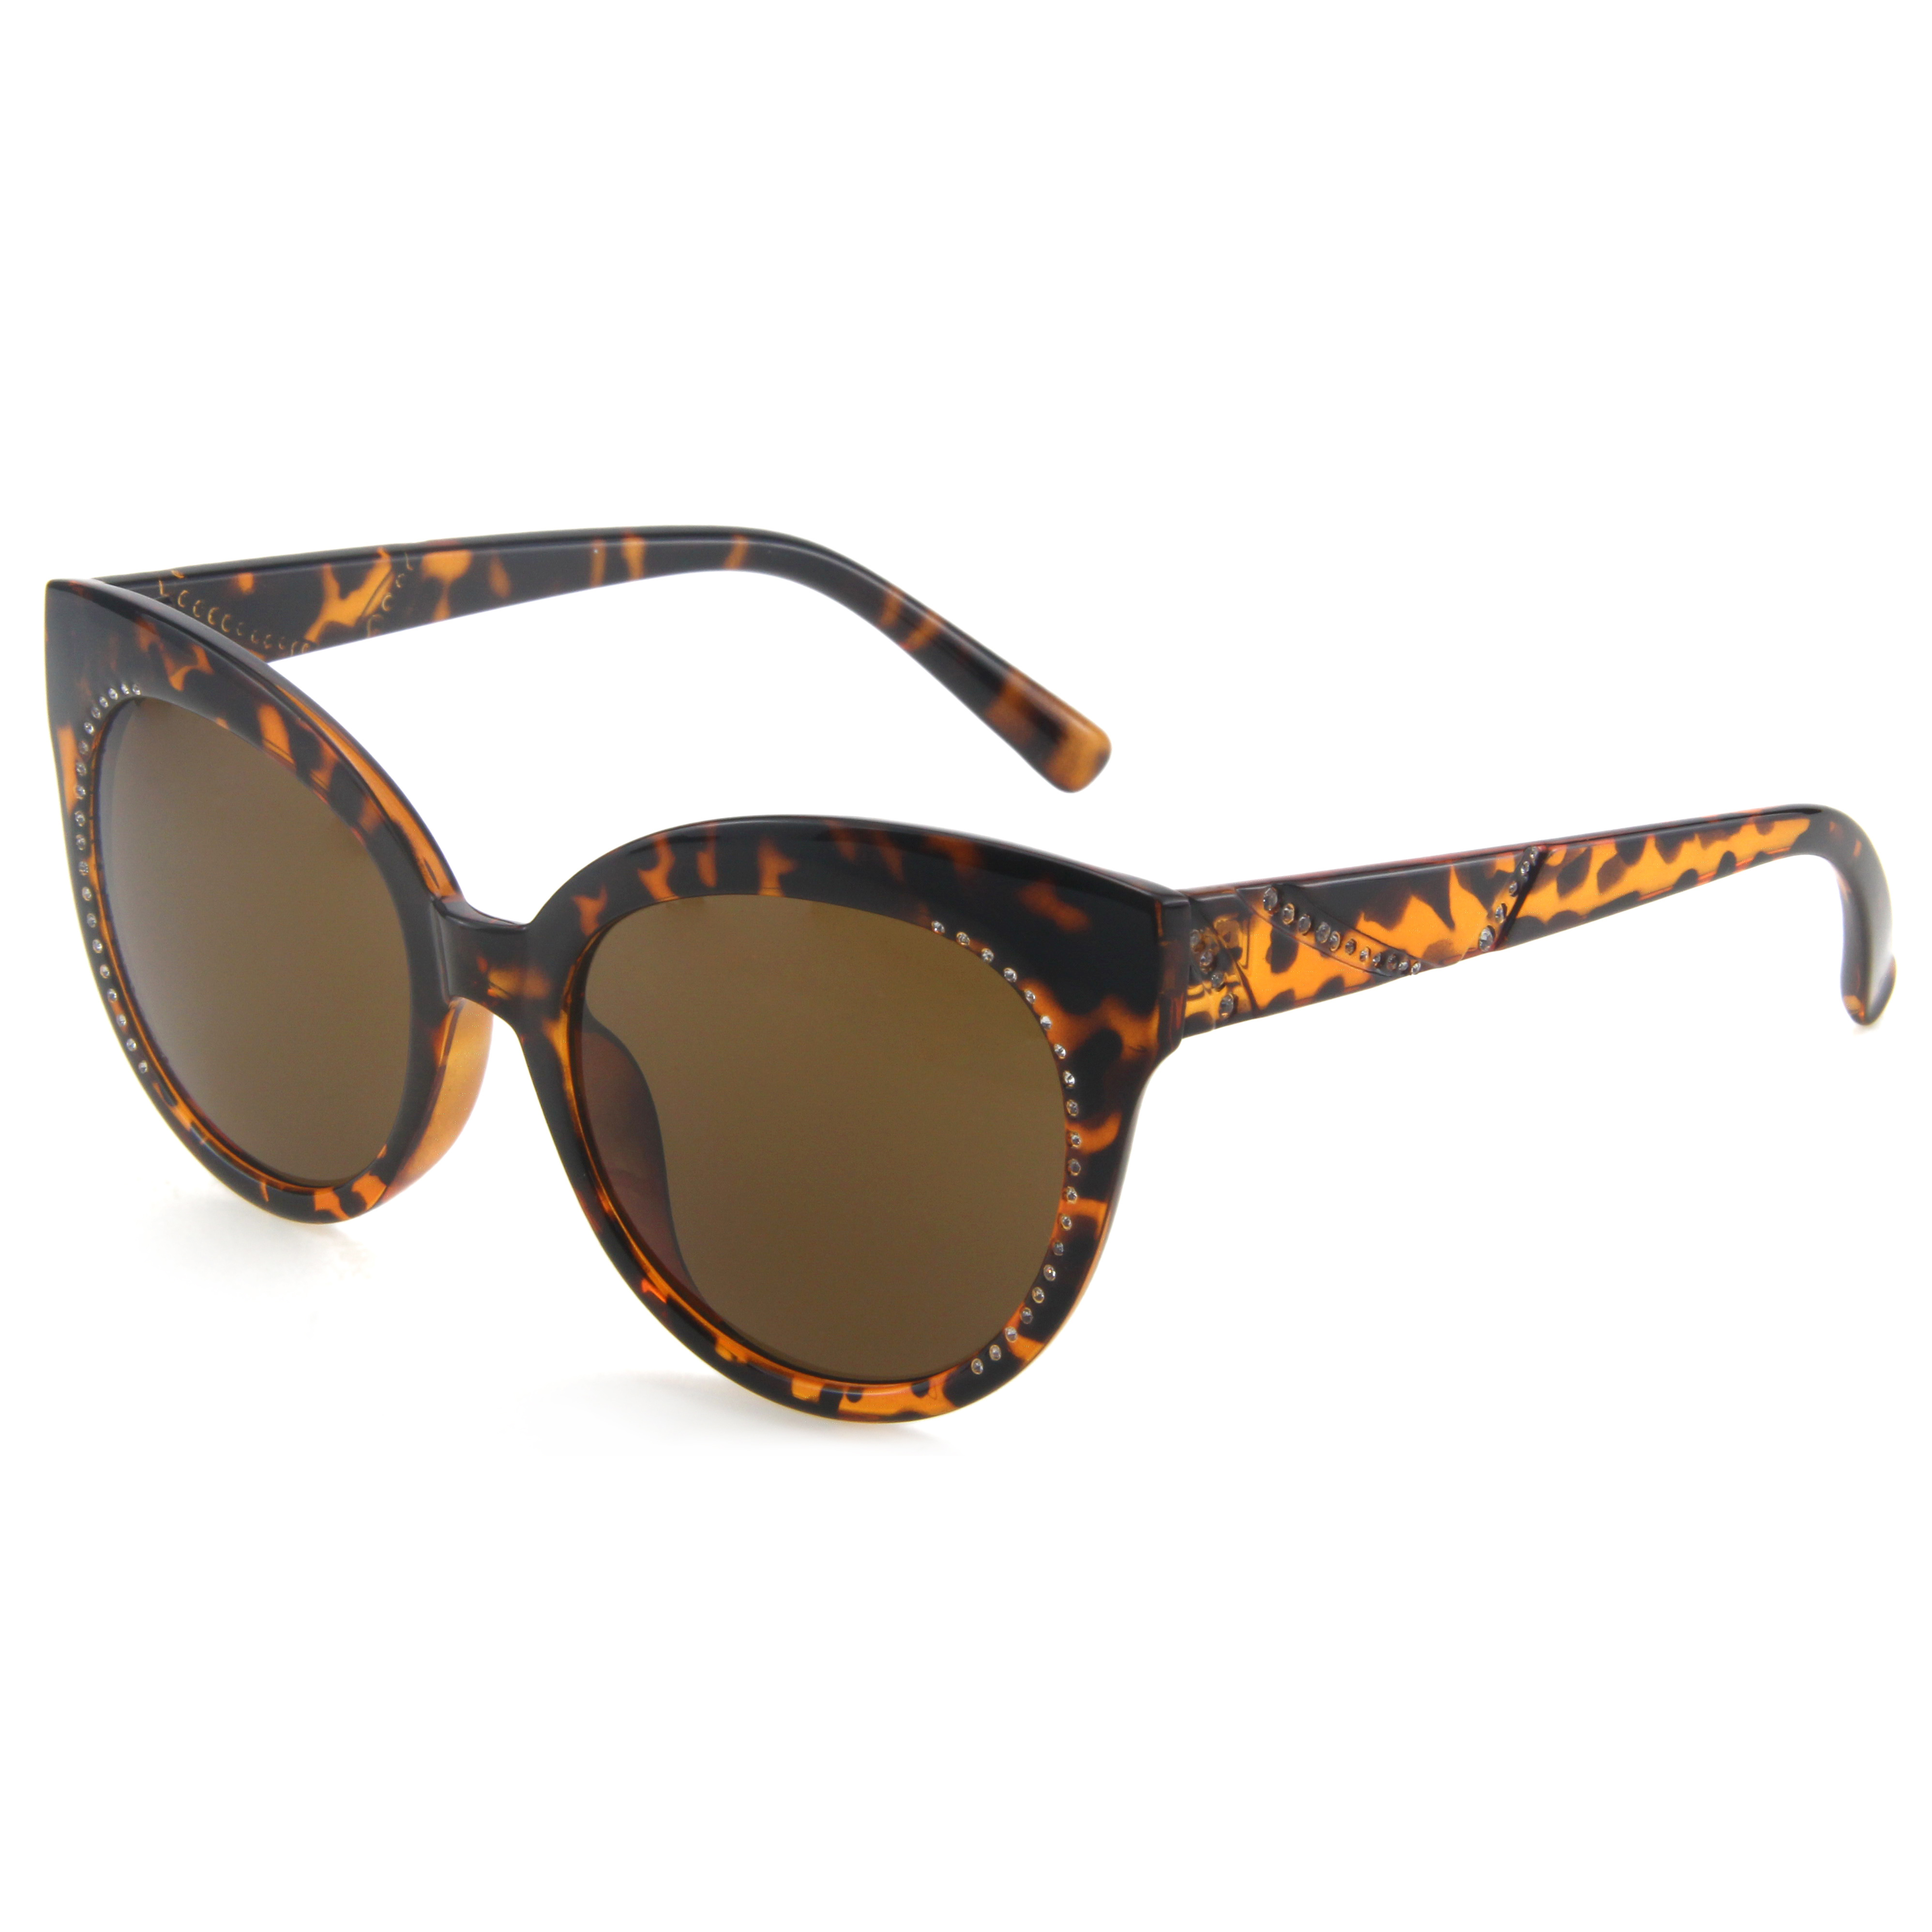 Стильные солнцезащитные очки «кошачий глаз» EUGENIA в черепаховой расцветке кофейного цвета, украшенные бриллиантами, нестандартного цвета